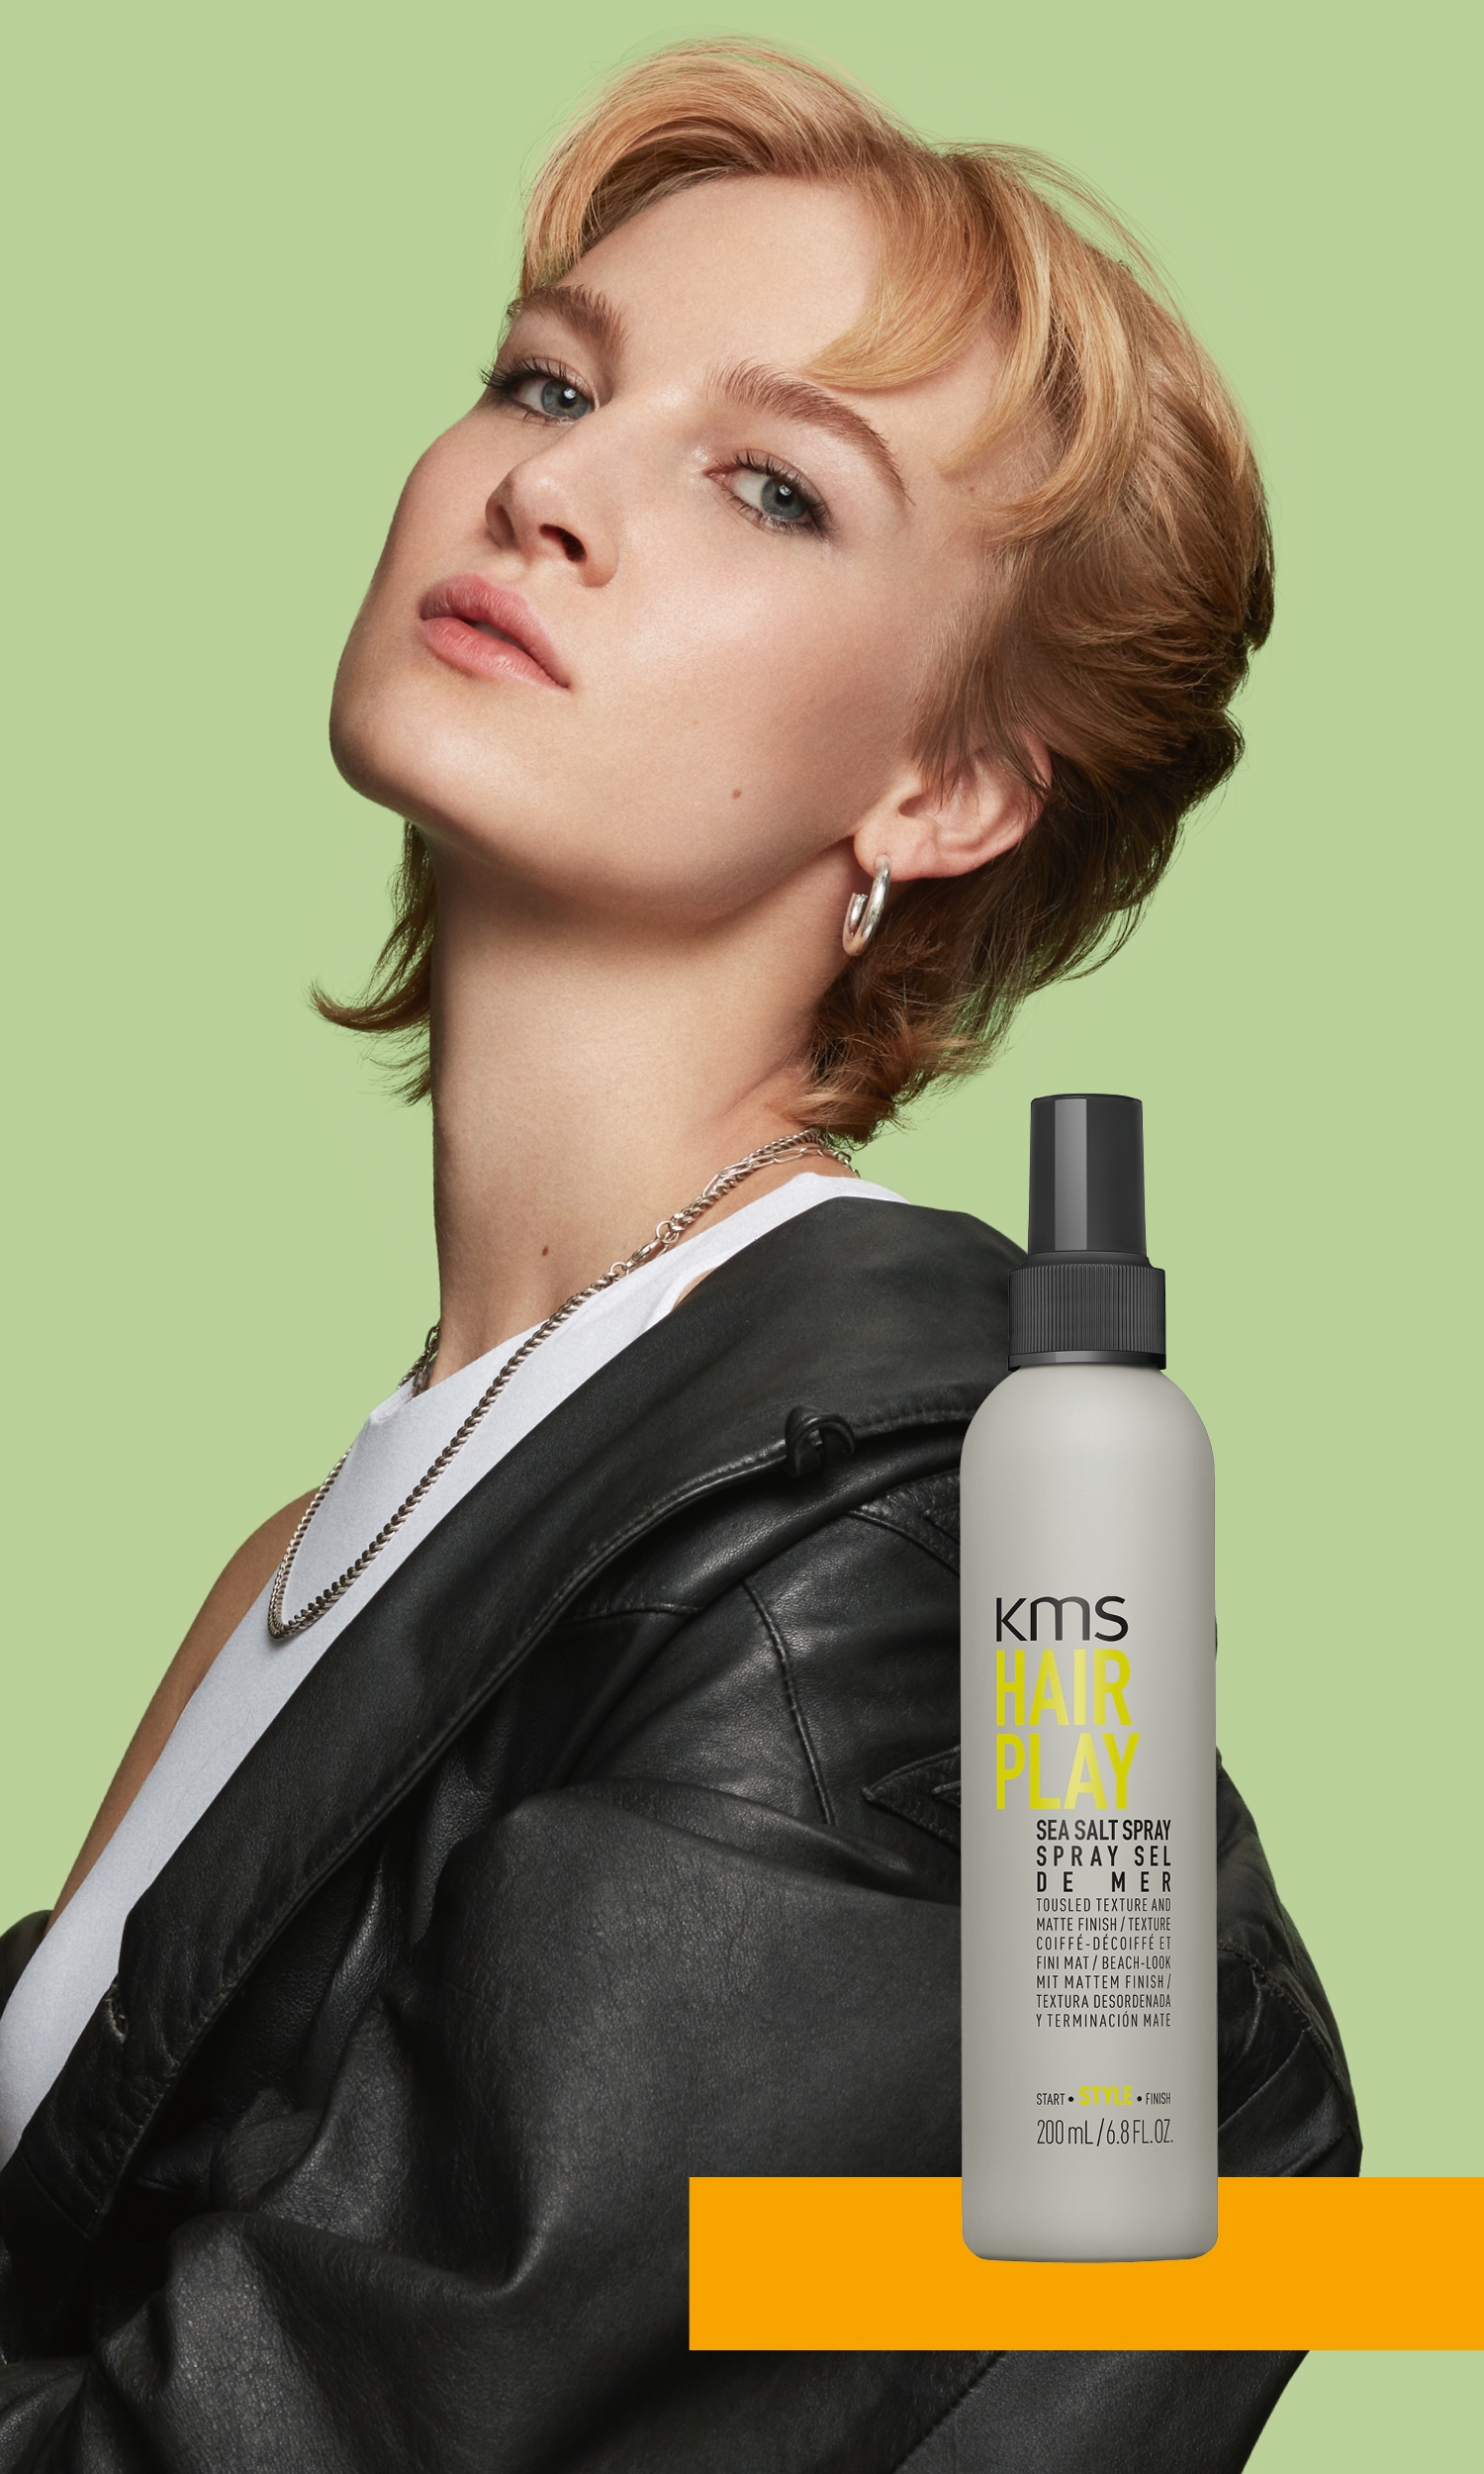 KMS Hairplay Sea Salt Spray